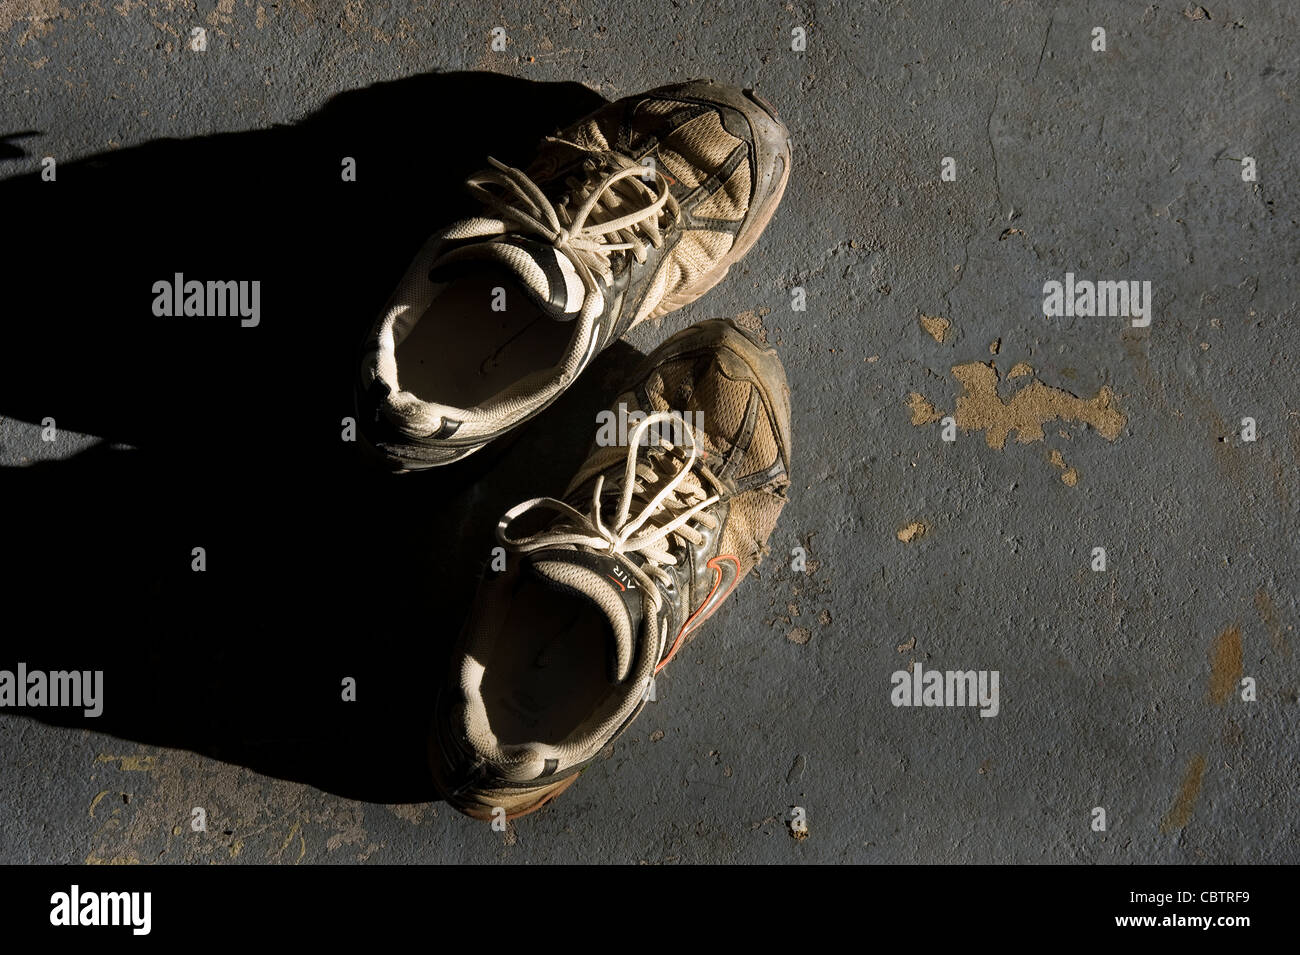 Dirty running shoes immagini e fotografie stock ad alta risoluzione - Alamy